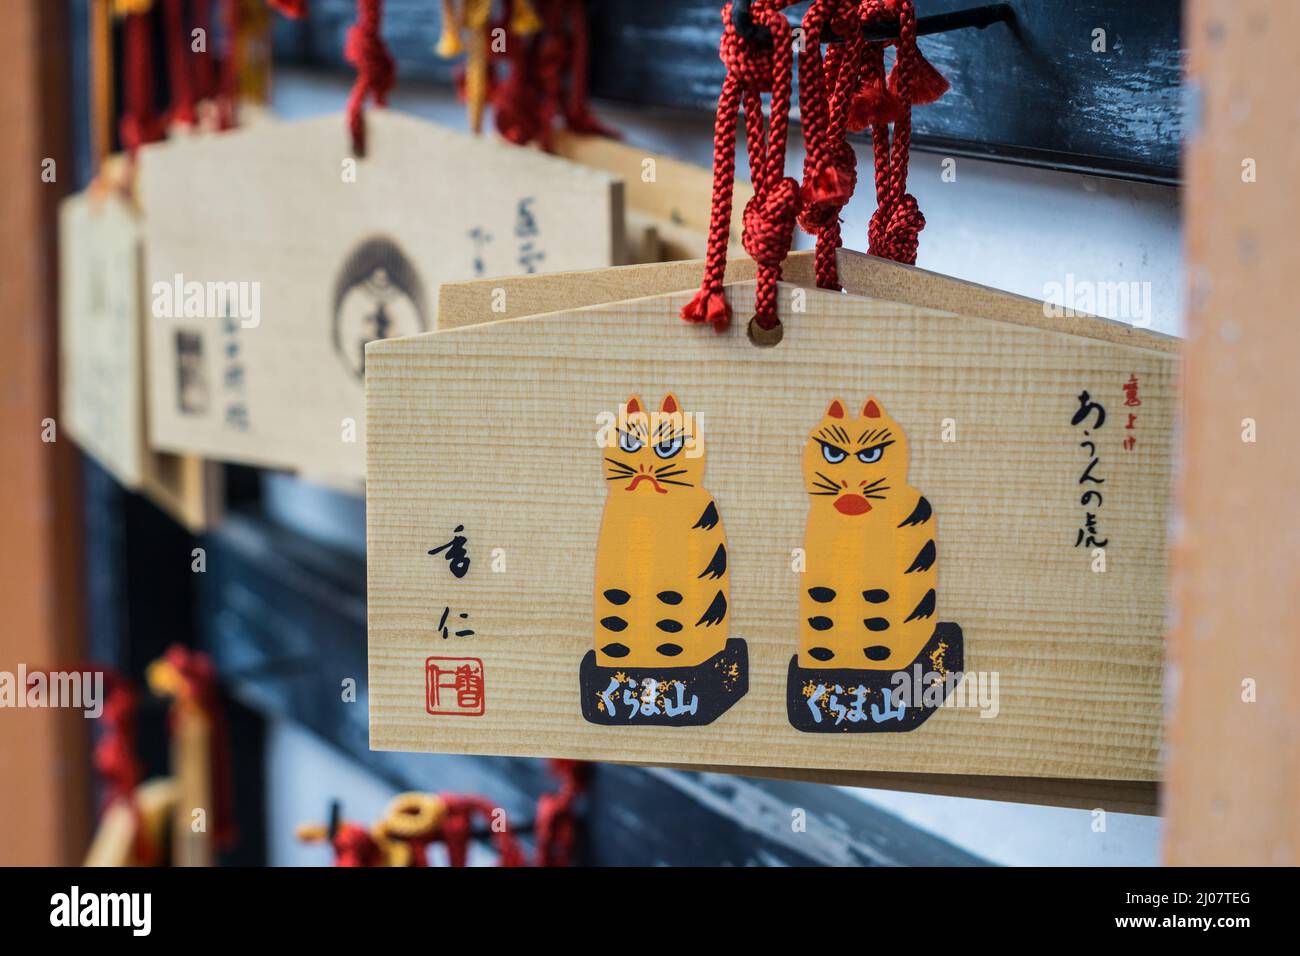 Japanische hölzerne Gebetstafeln oder Ema 絵馬, die in einem Tempel in Kyoto, Japan, hängen und japanische Schriftzeichen zeigen Stockfoto